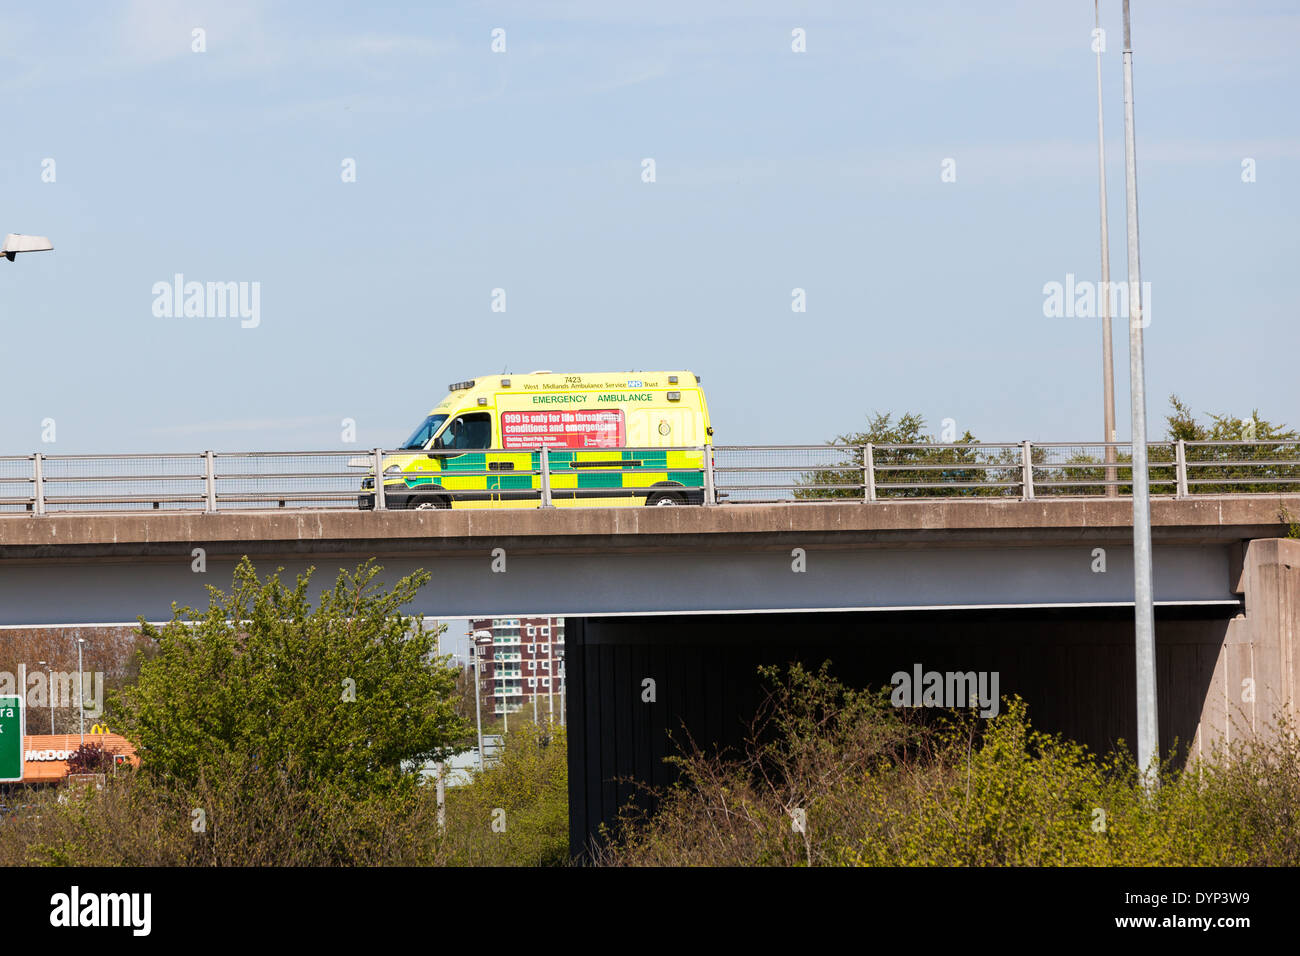 West Midlands servicio de ambulancia Llavero..